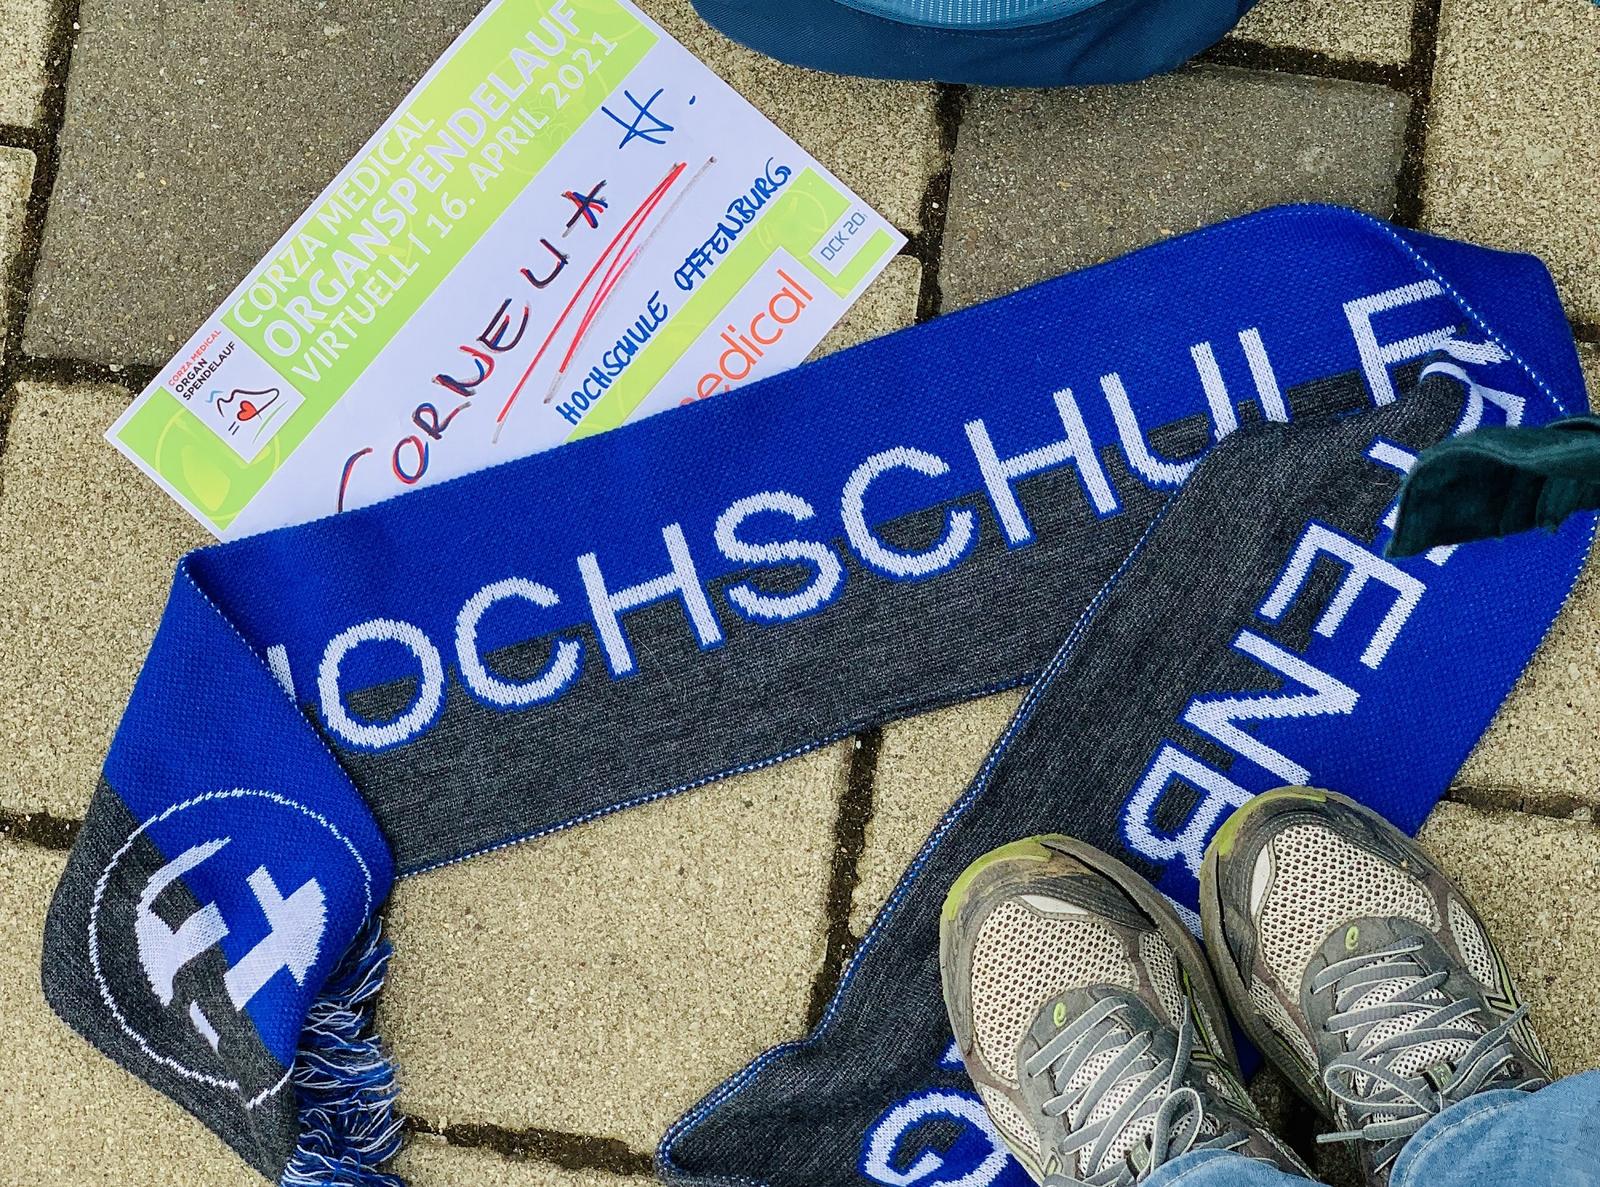 Hochschule-Offenburg-Schal, Startnummer und Laufschuhe